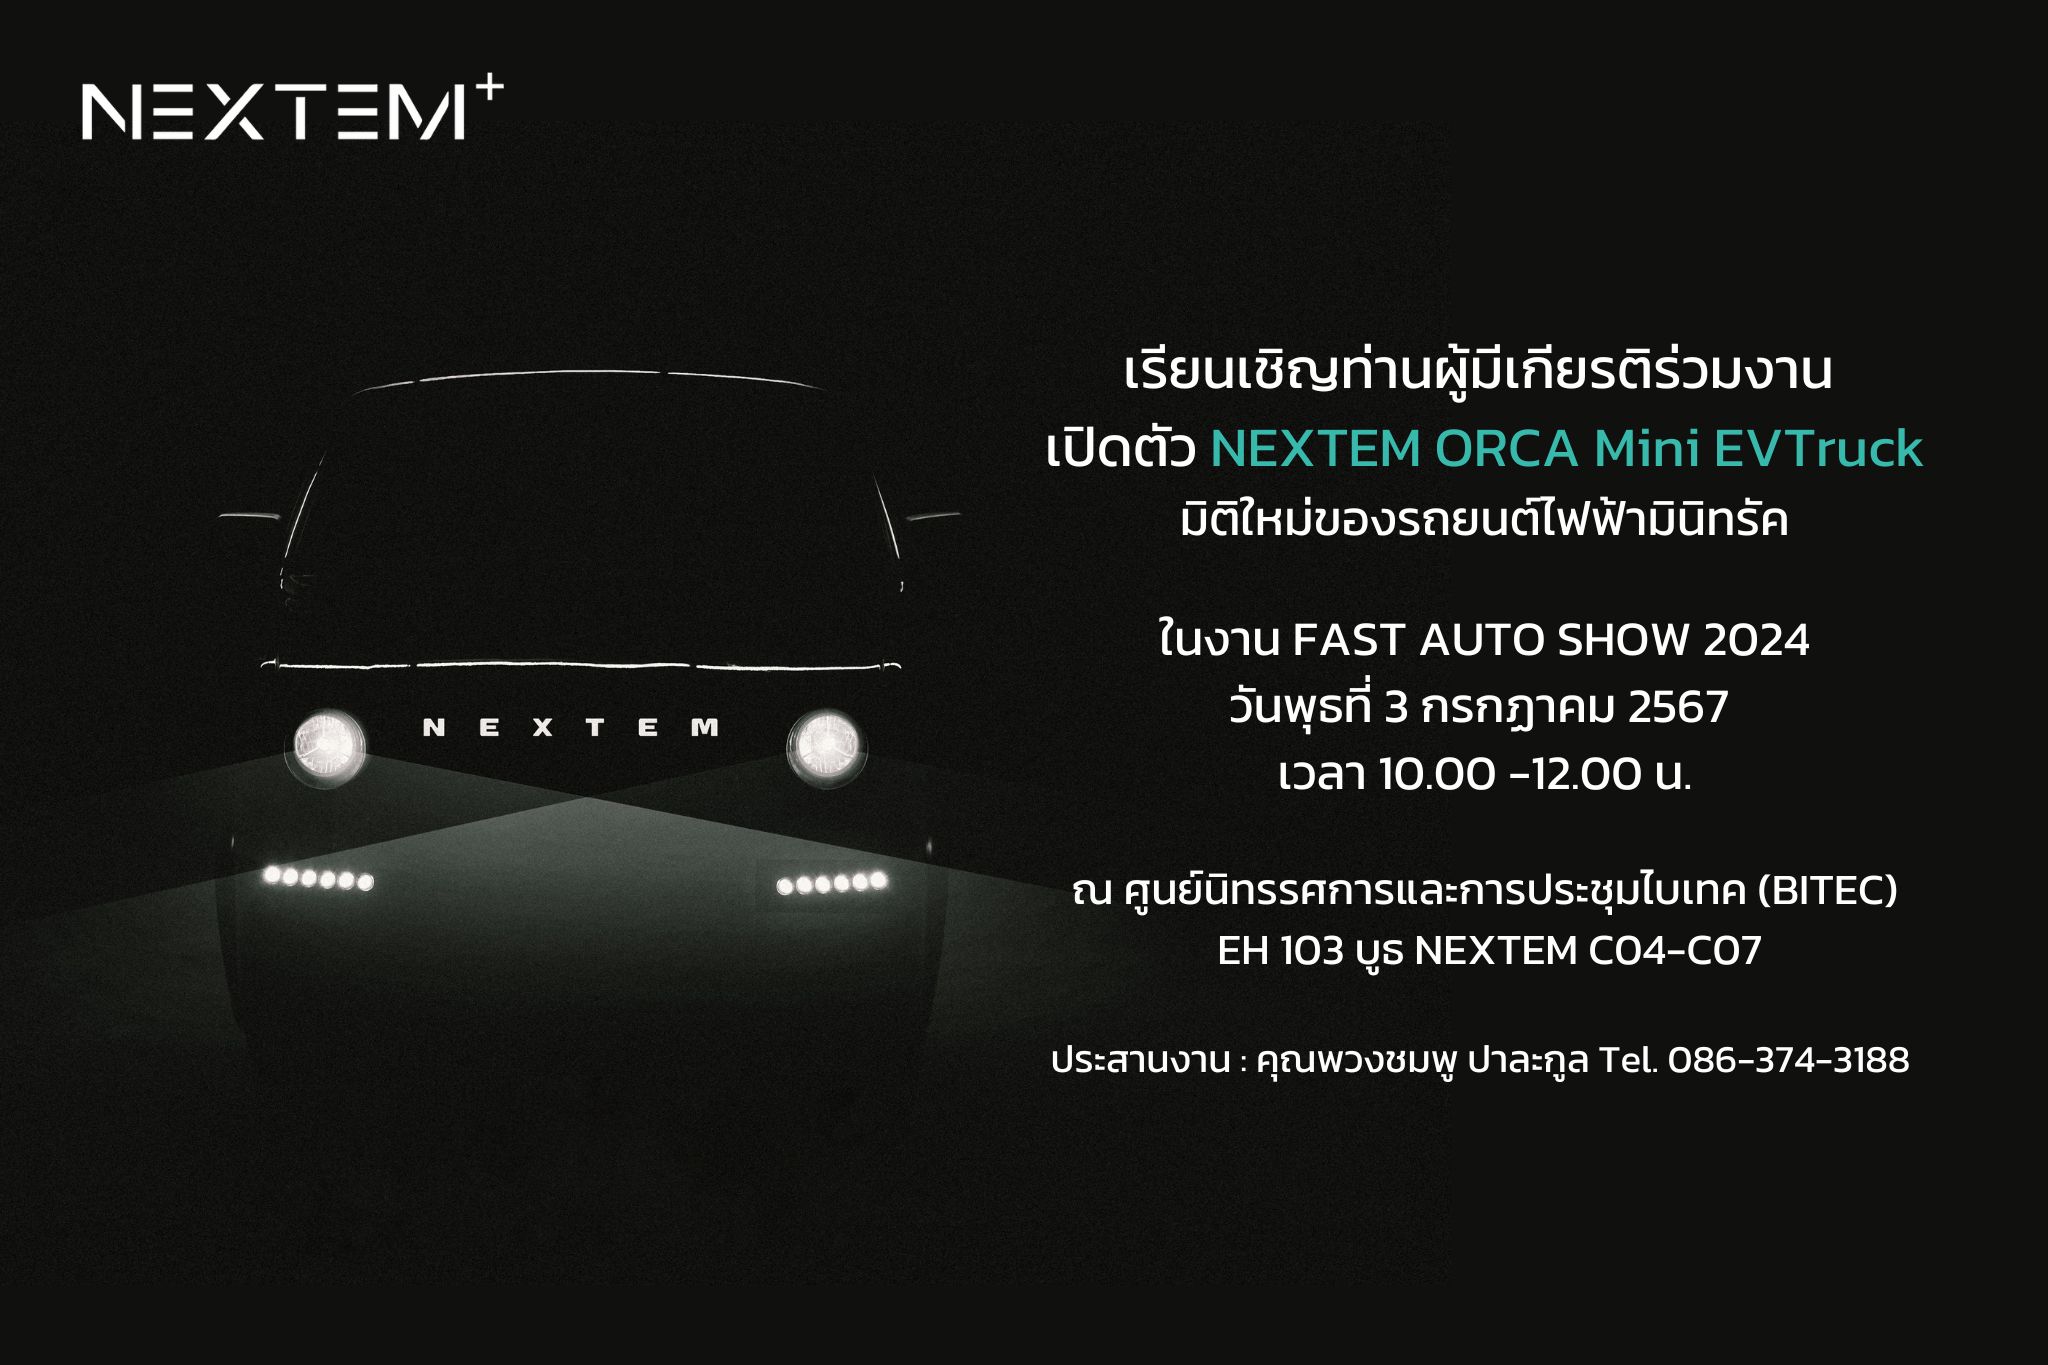 NEXTEM ประเทศไทย เปิดตัว NEXTEM ORCA Mini EVTruck รถไฟฟ้ามินิทรัค ORCA ด้วยค่ะ